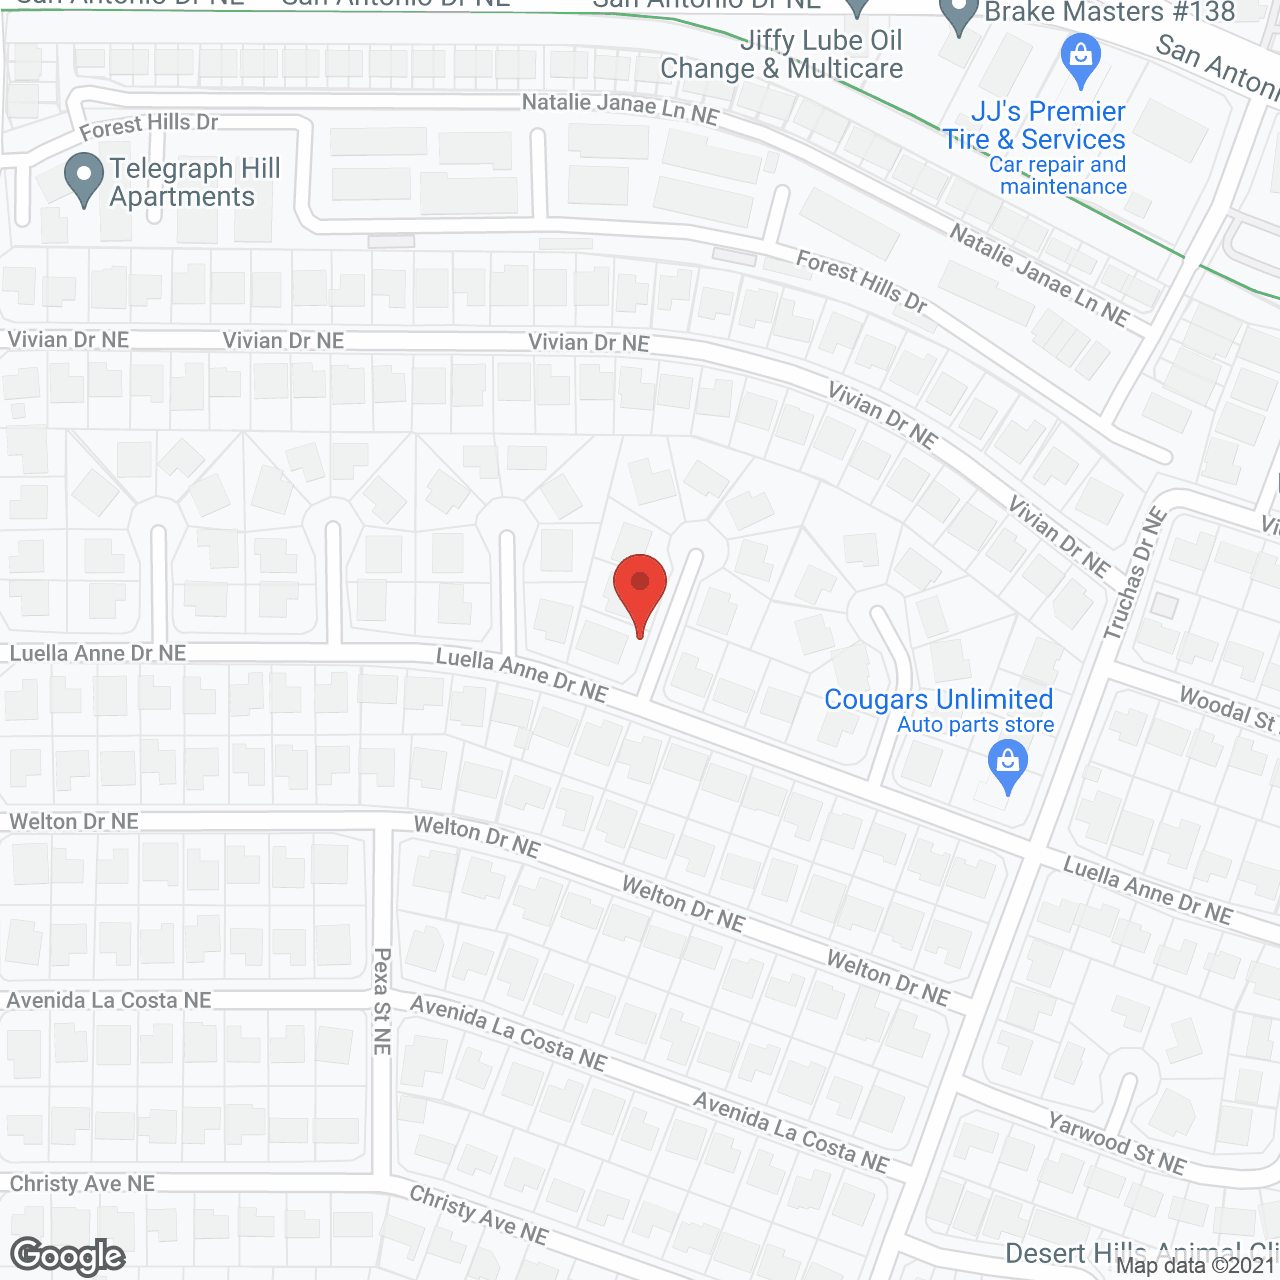 Next Door Homecare LLC in google map